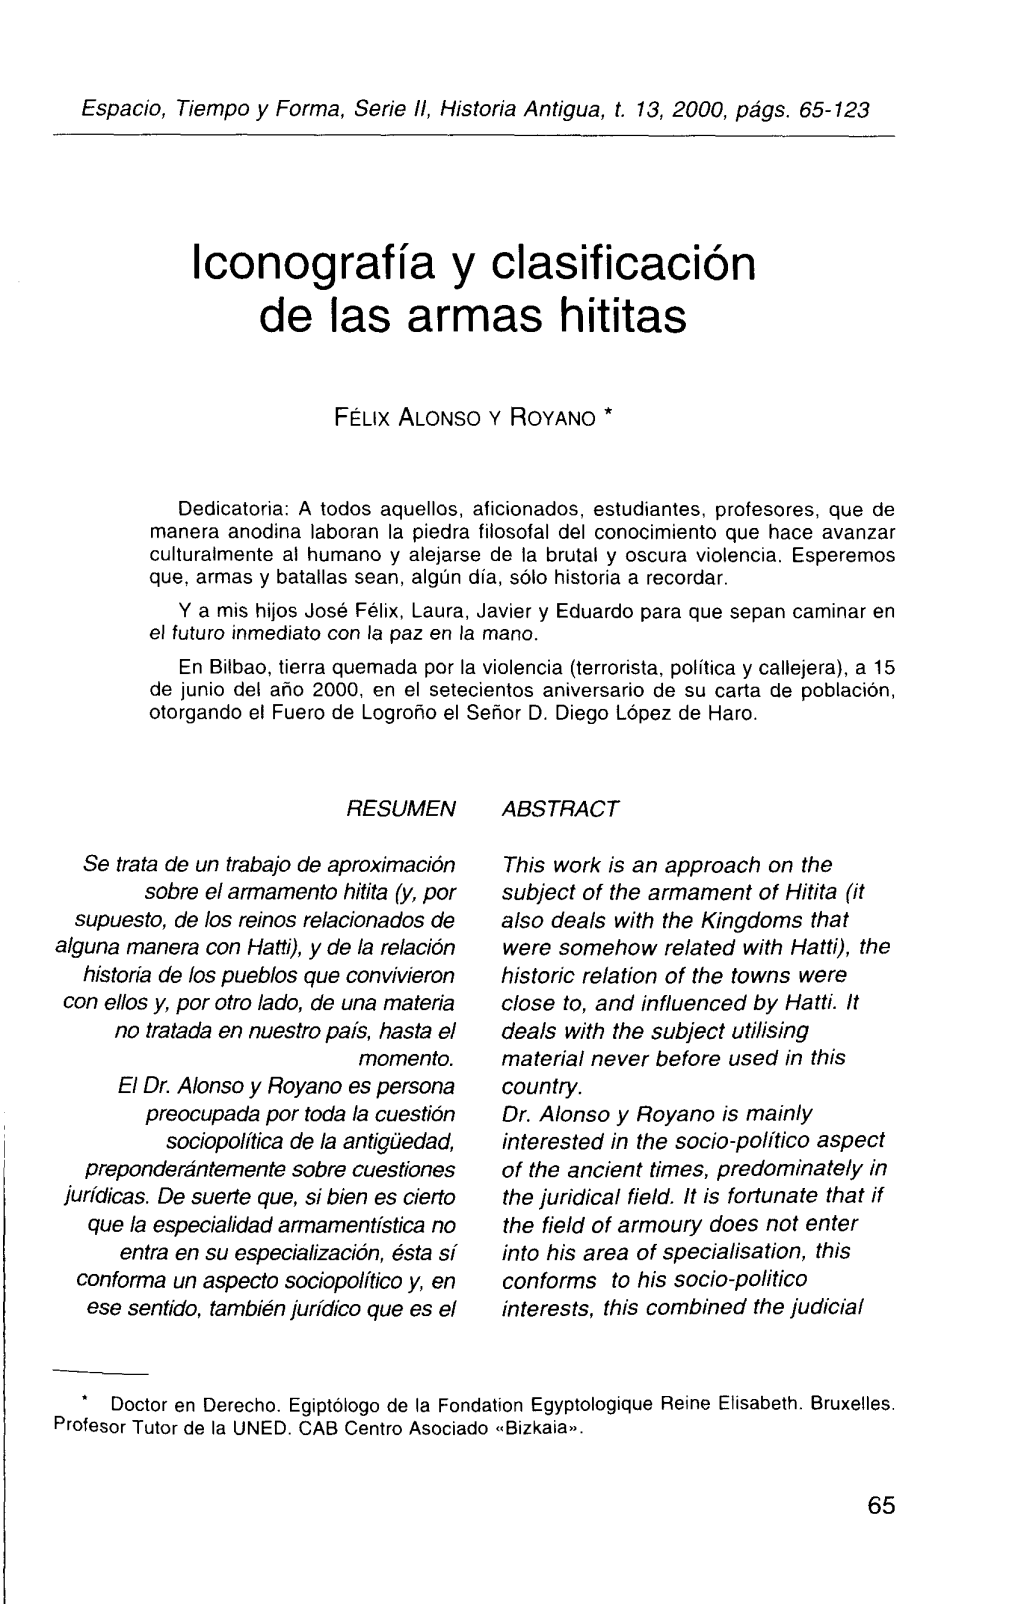 Iconografía Y Clasificación De Las Armas Hititas